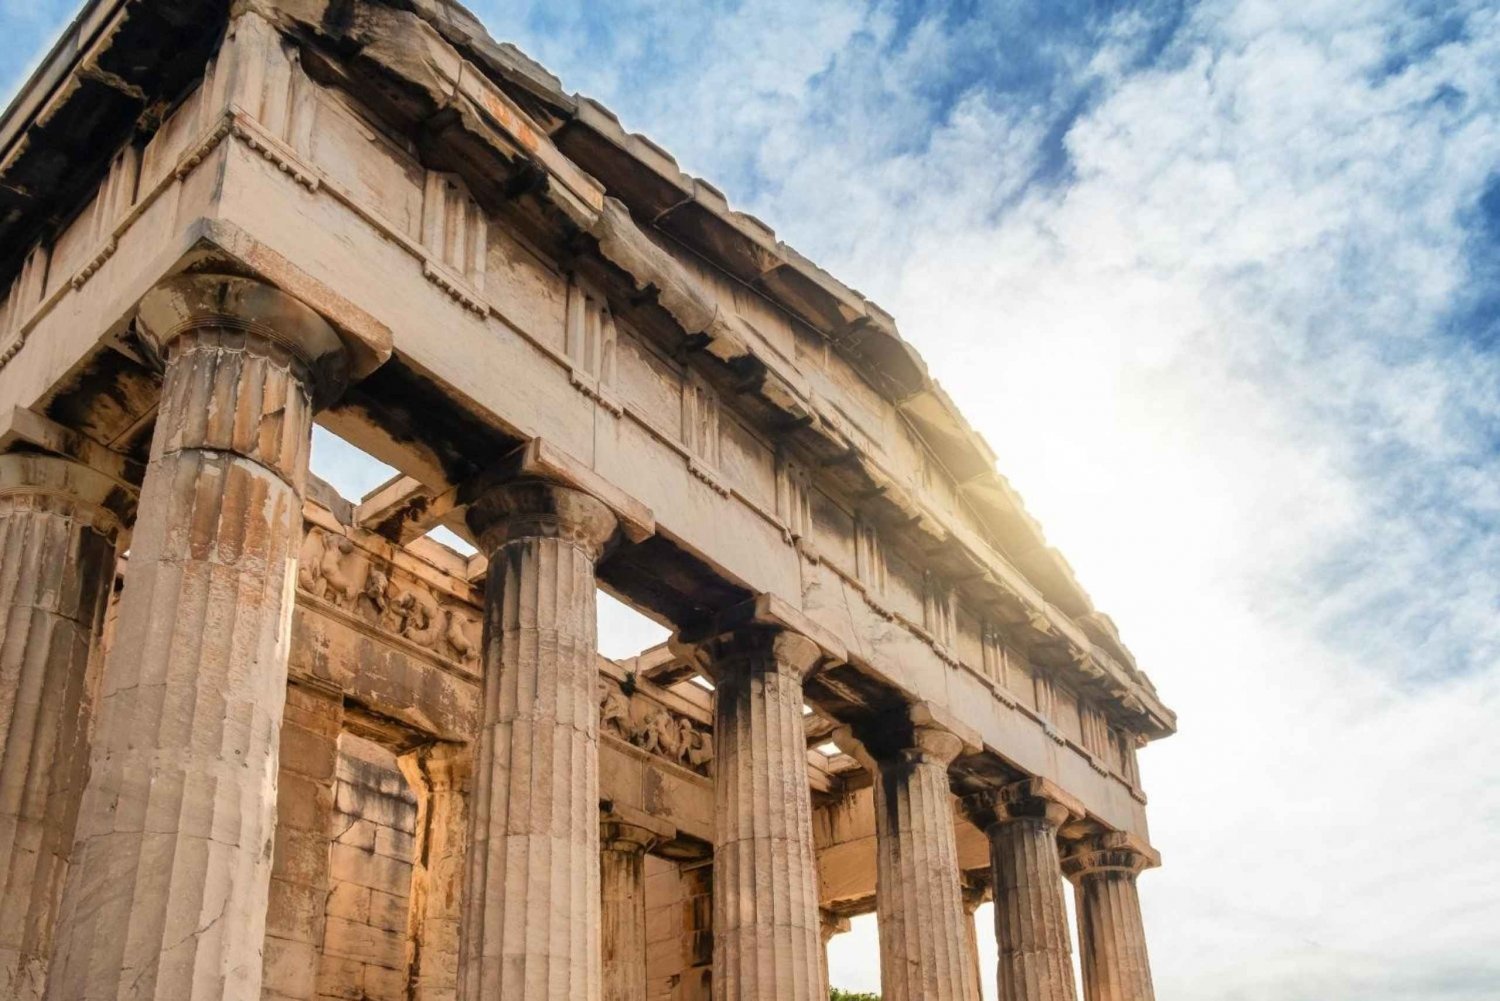 Atene: Cattura i luoghi più fotogenici con un abitante del posto